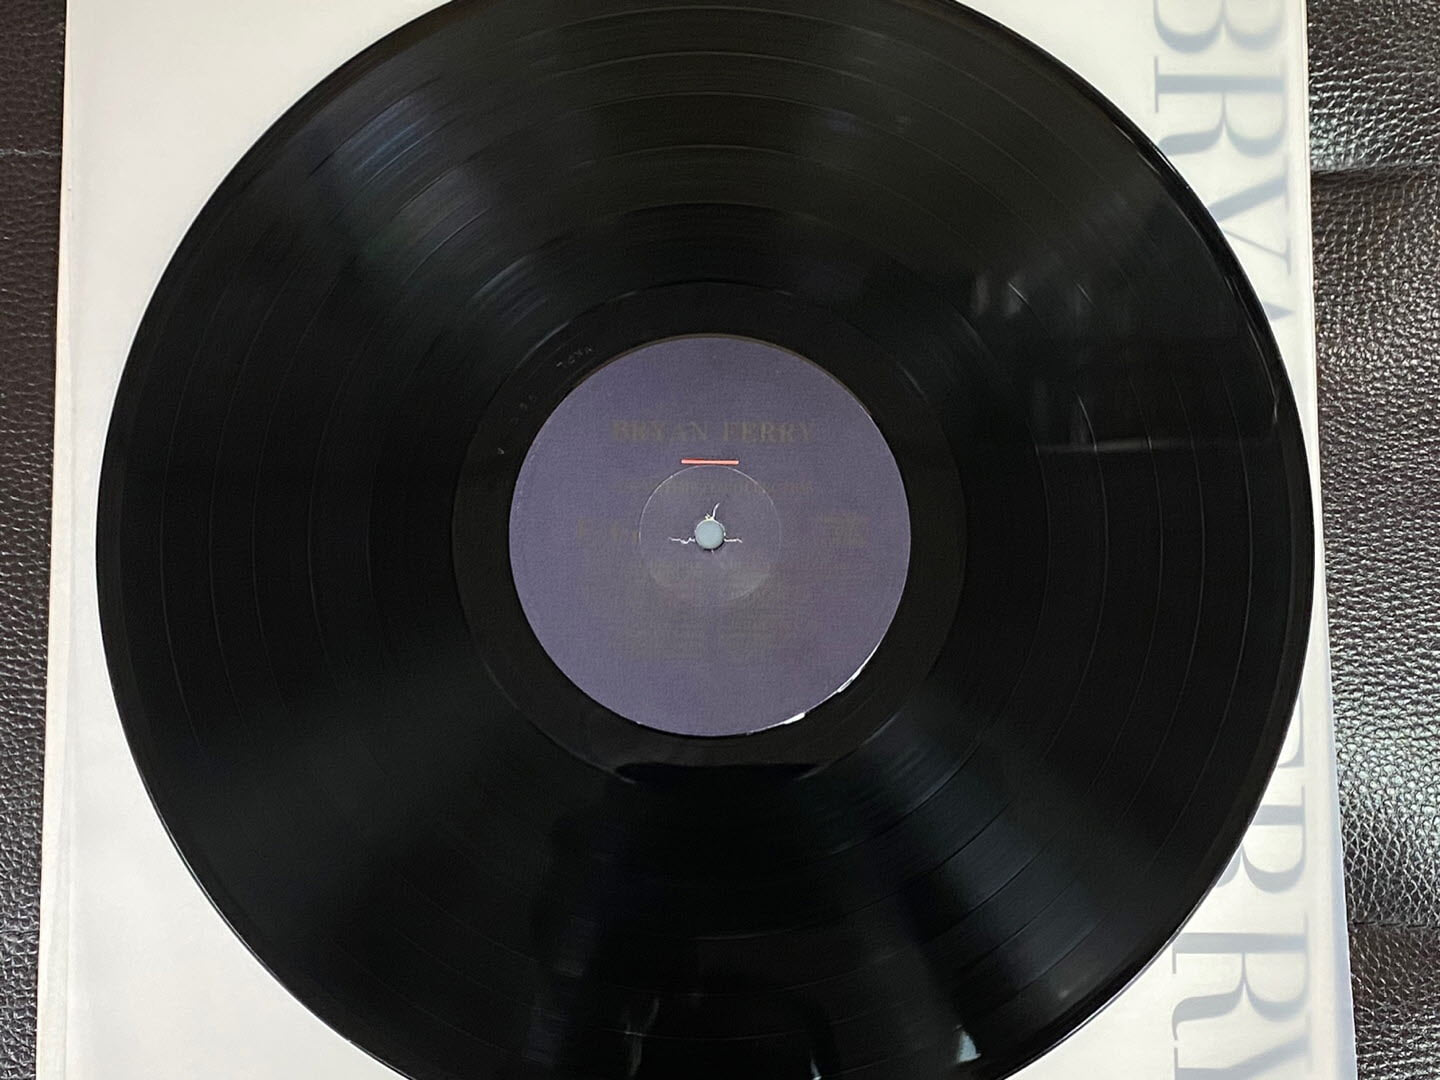 [LP] 브라이언 페리,록시 뮤직 - Bryan Ferry,Roxy Music - The Ultimate Collection LP [EMI계몽사-라이센스반]